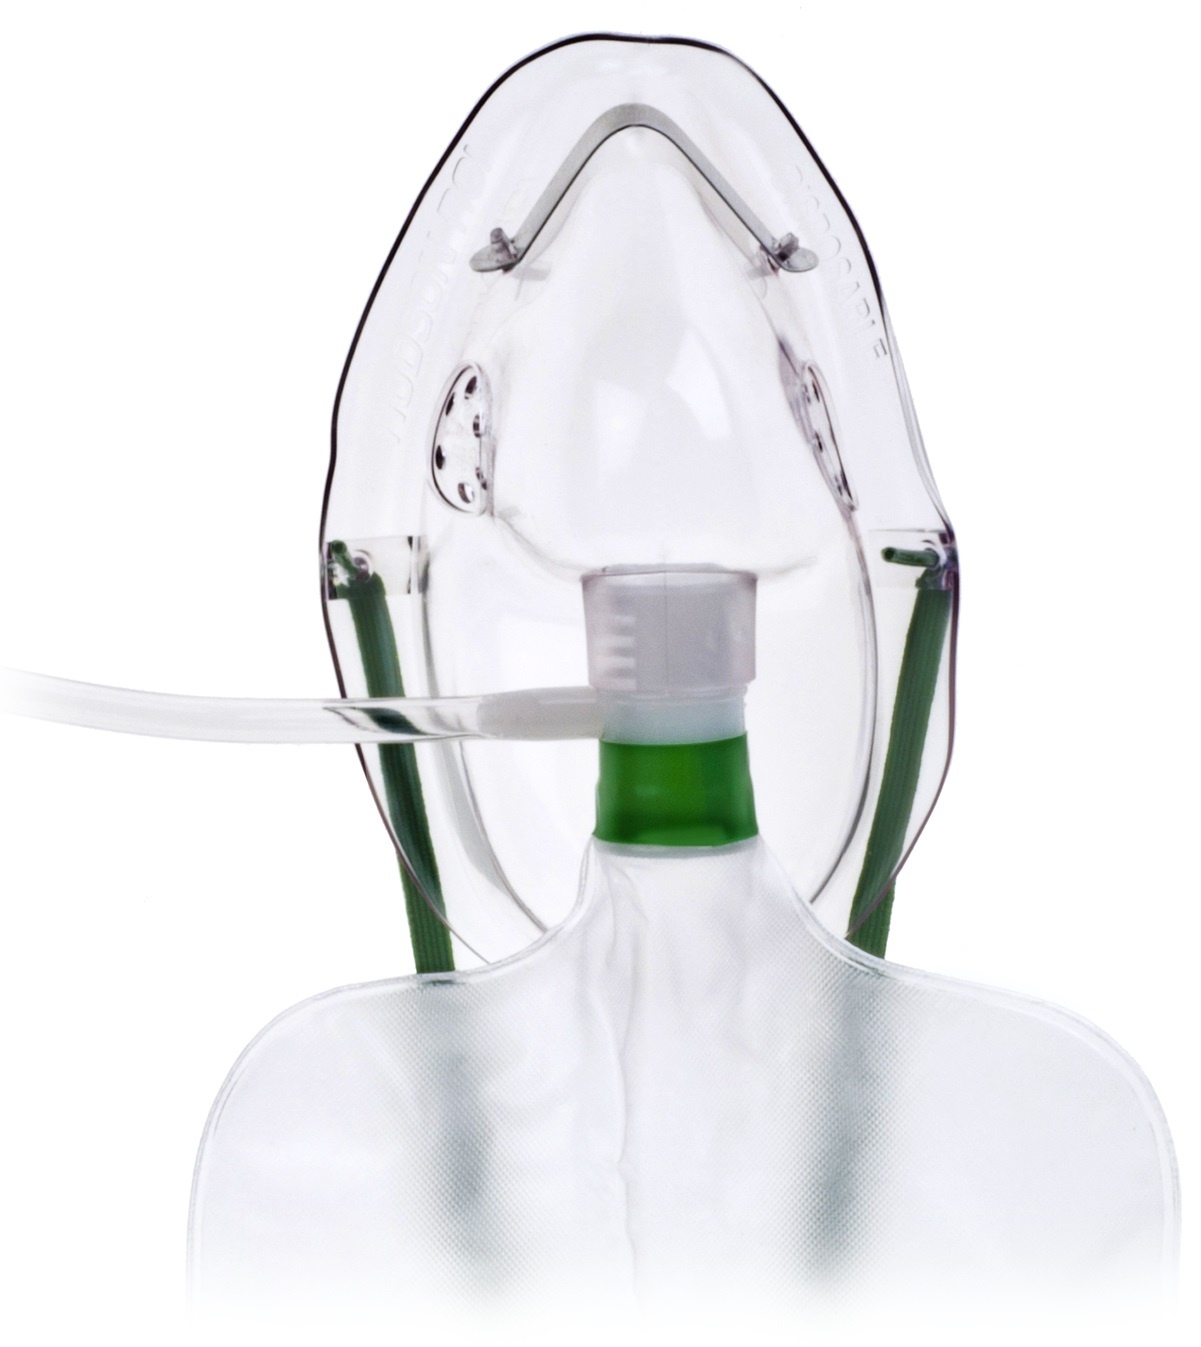 Hudson Mask High Concentration Elongated with 7ft Oxygen Tubing & Reservoir Bag - Adult image 0